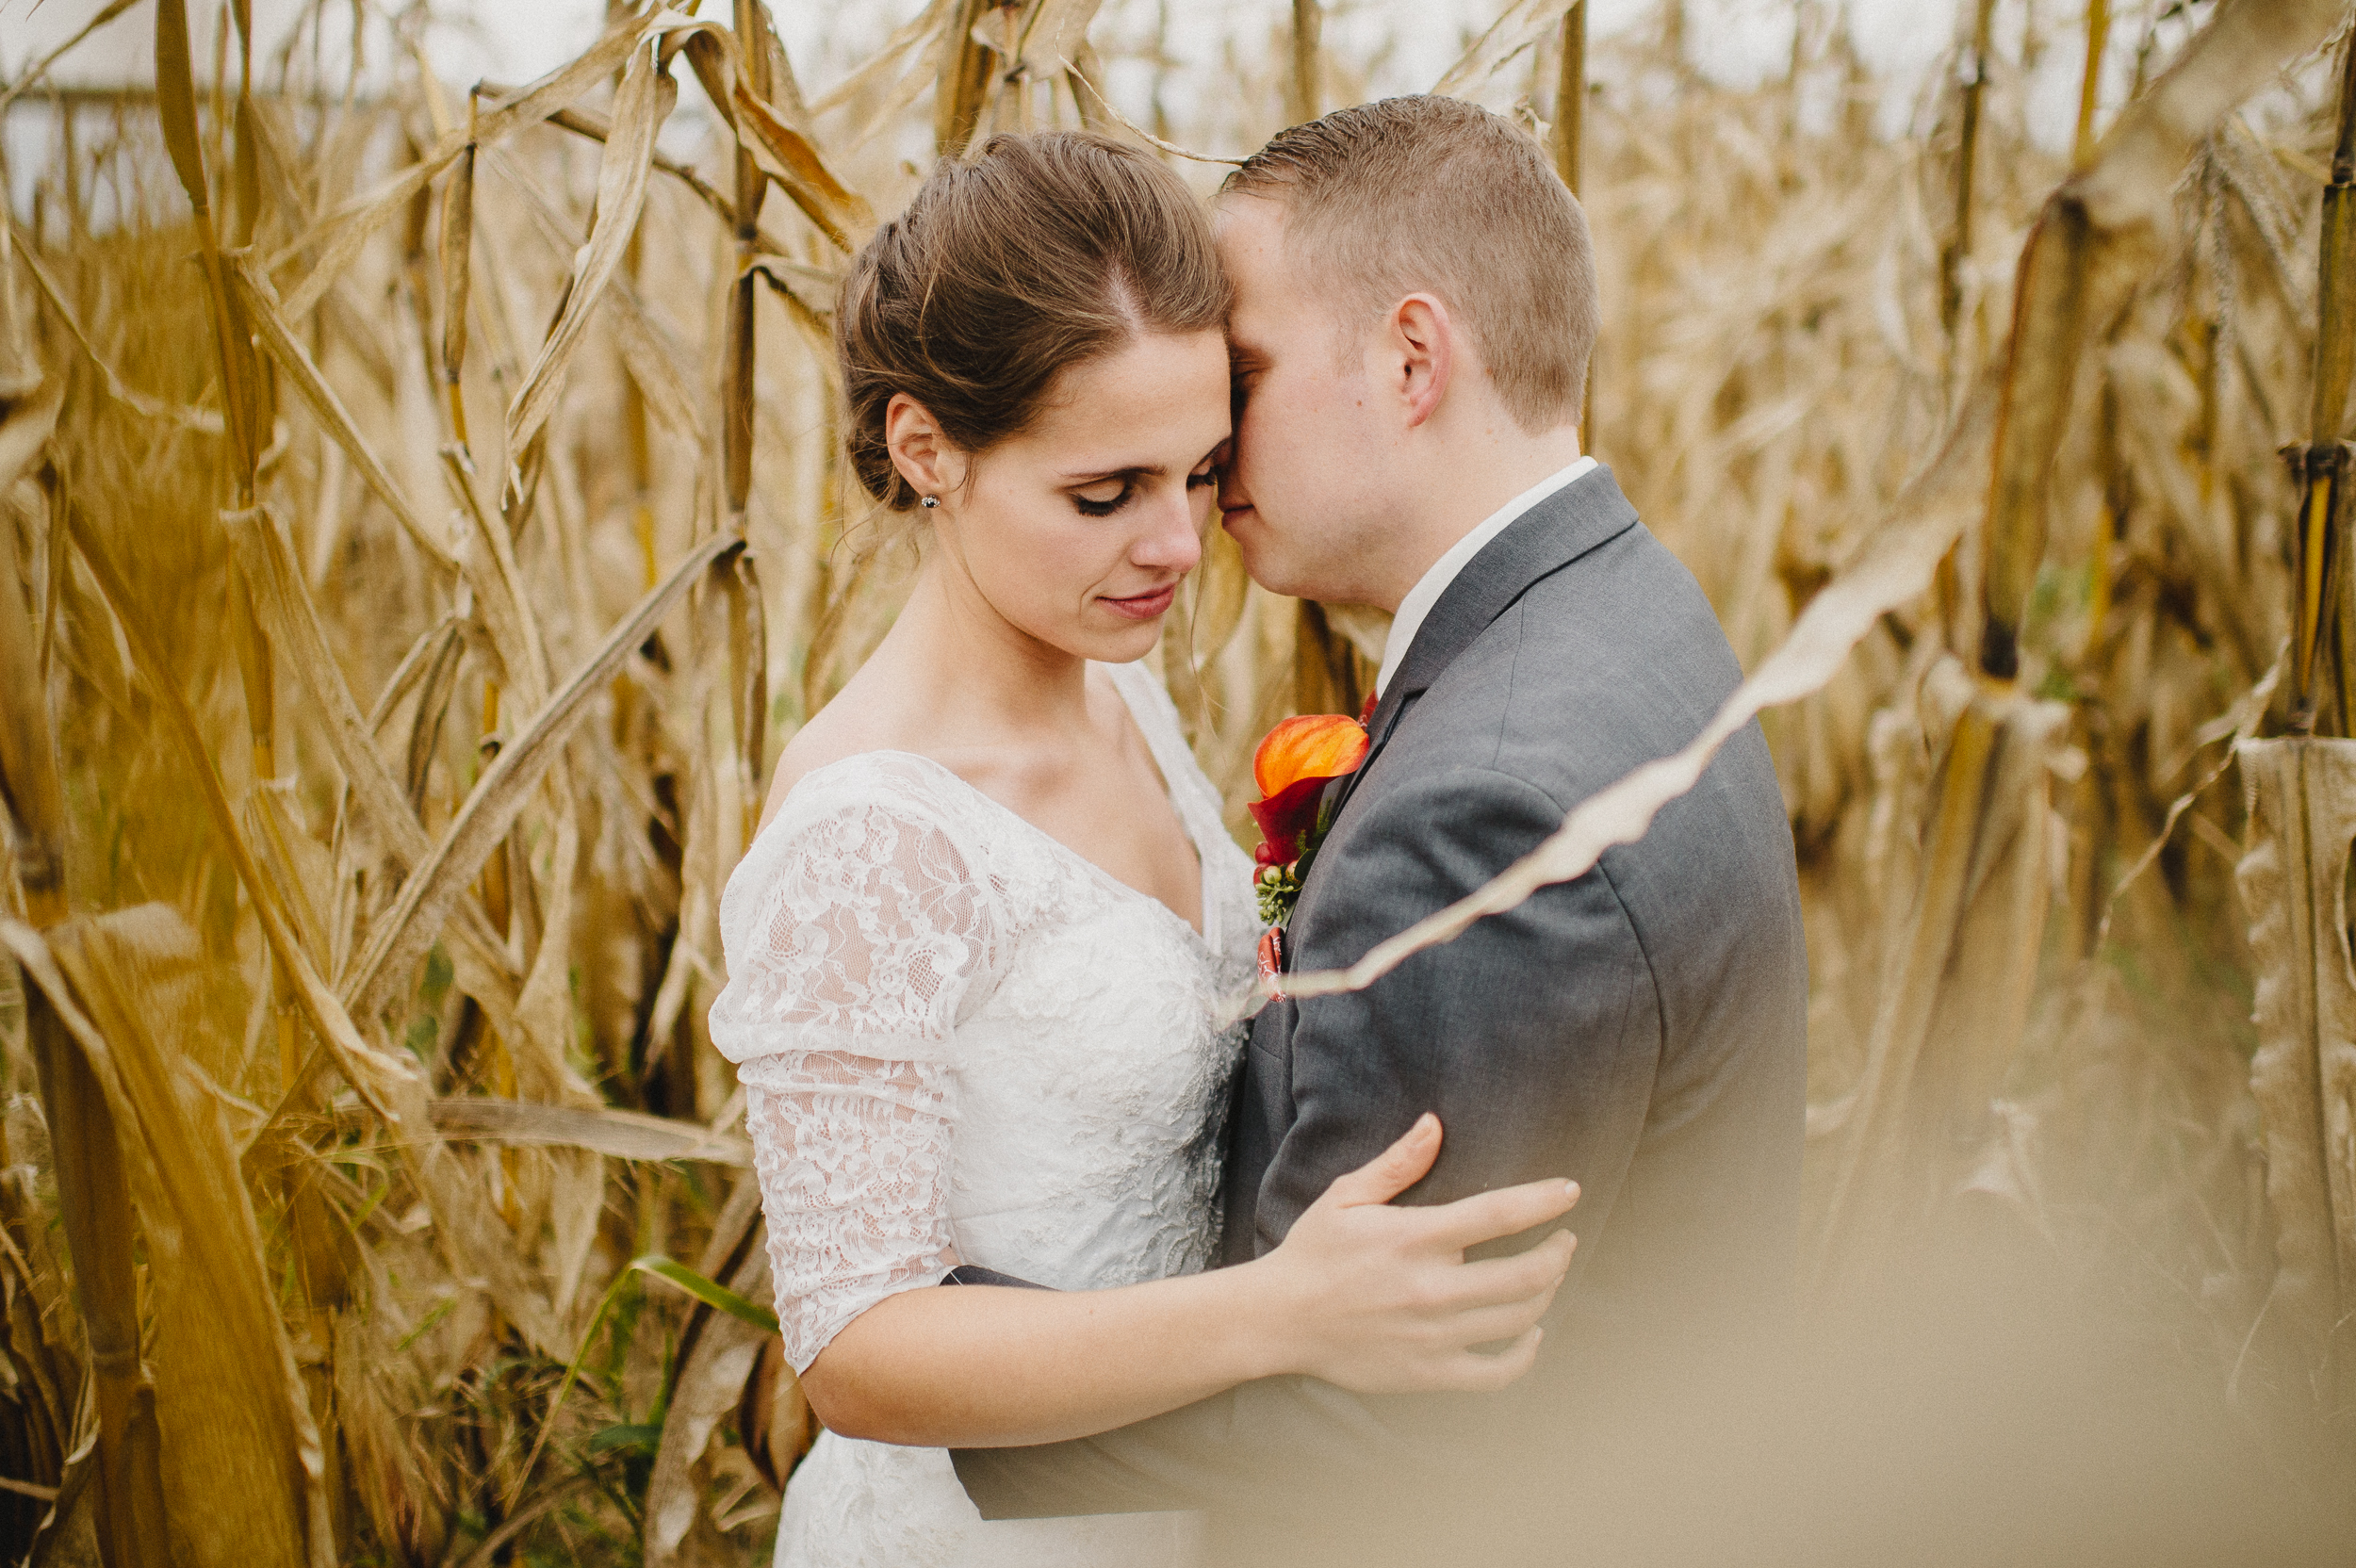 thousand-acre-farm-wedding-photographer-59.jpg